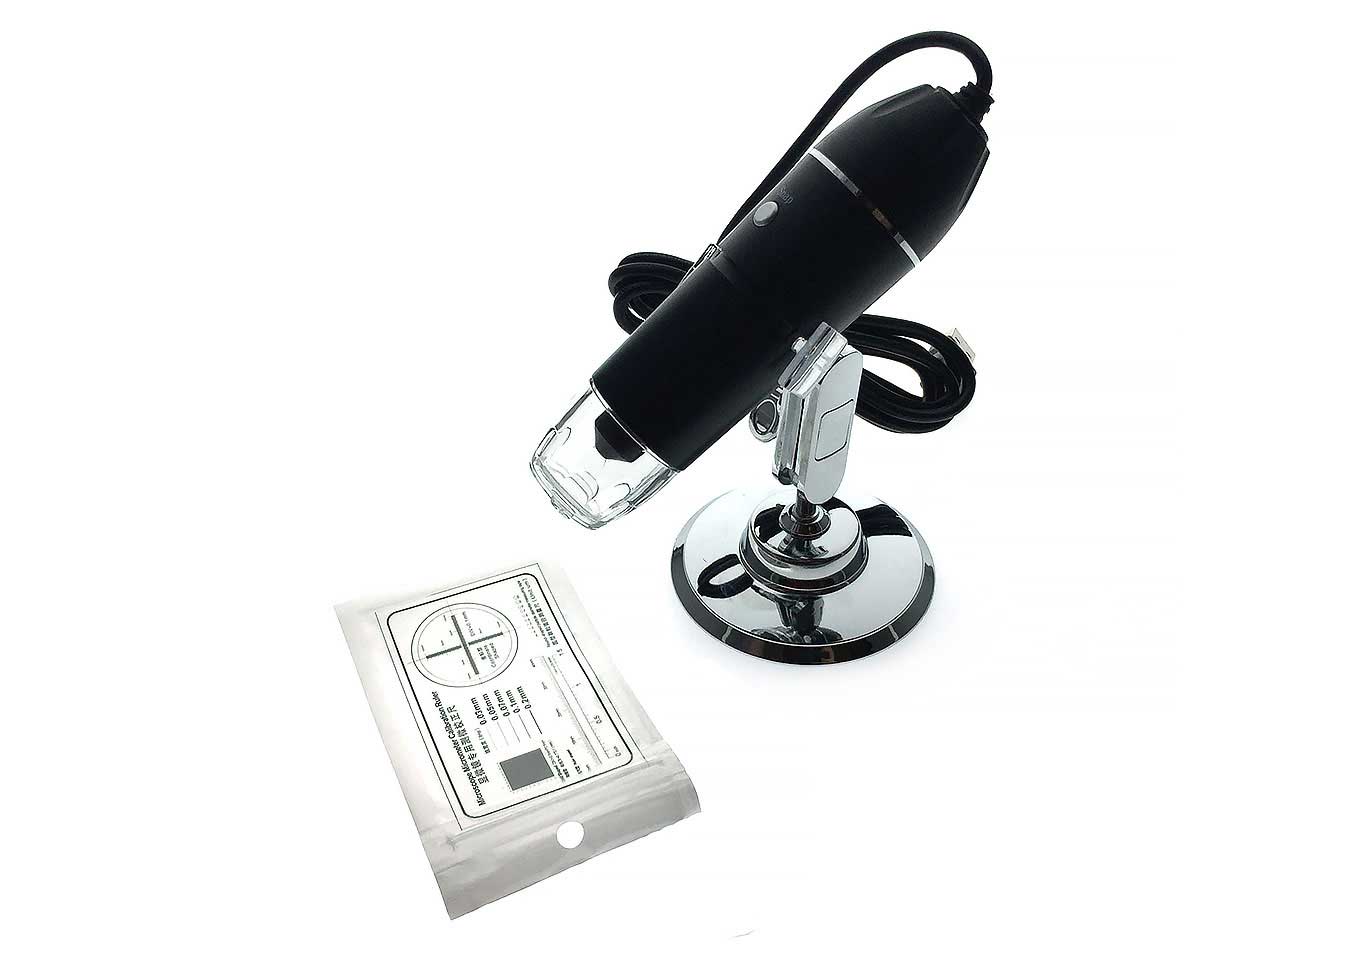 USB-микроскоп цифровой Espada U1600X цифровой usb микроскоп b005